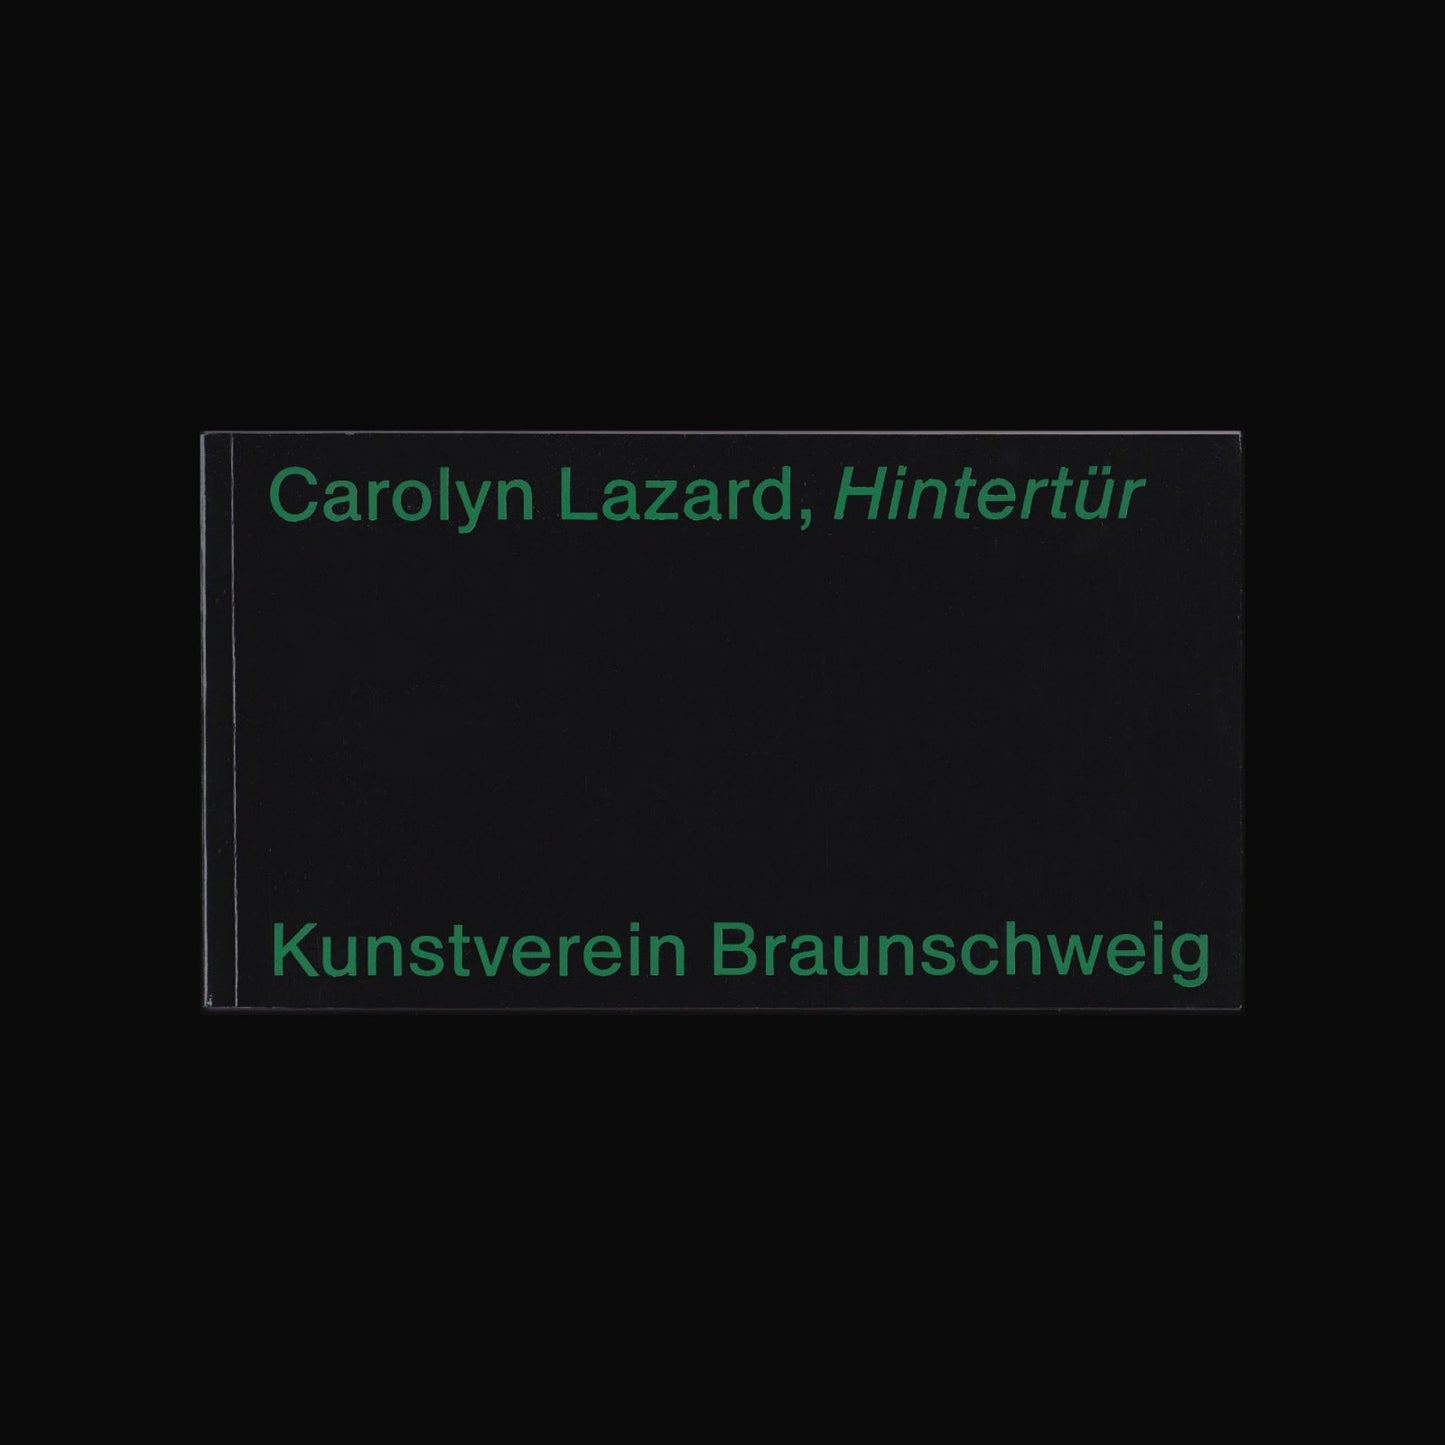 HINTERTÜR - CAROLYN LAZARD